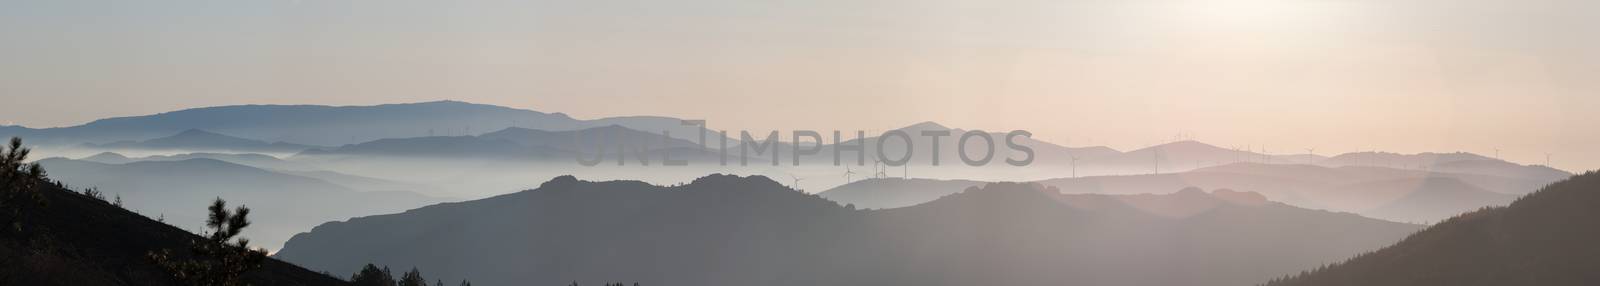 Misty hills by membio